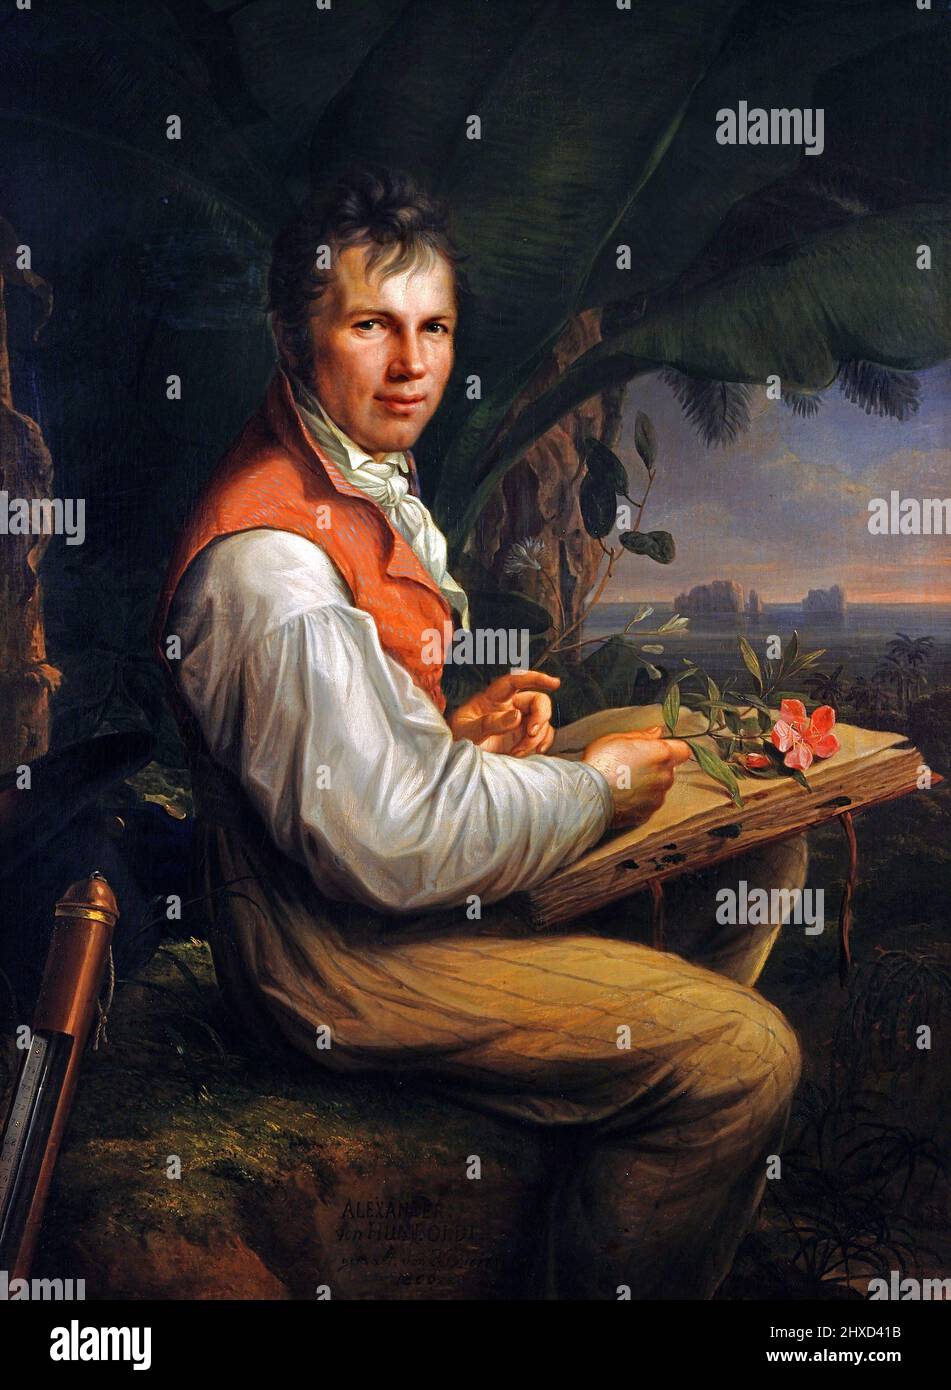 Portrait of the German naturalist and explorer, Alexander von Humboldt (1769-1859) by Friedrich Georg Weitsch, oil on canvas, 1806 Stock Photo